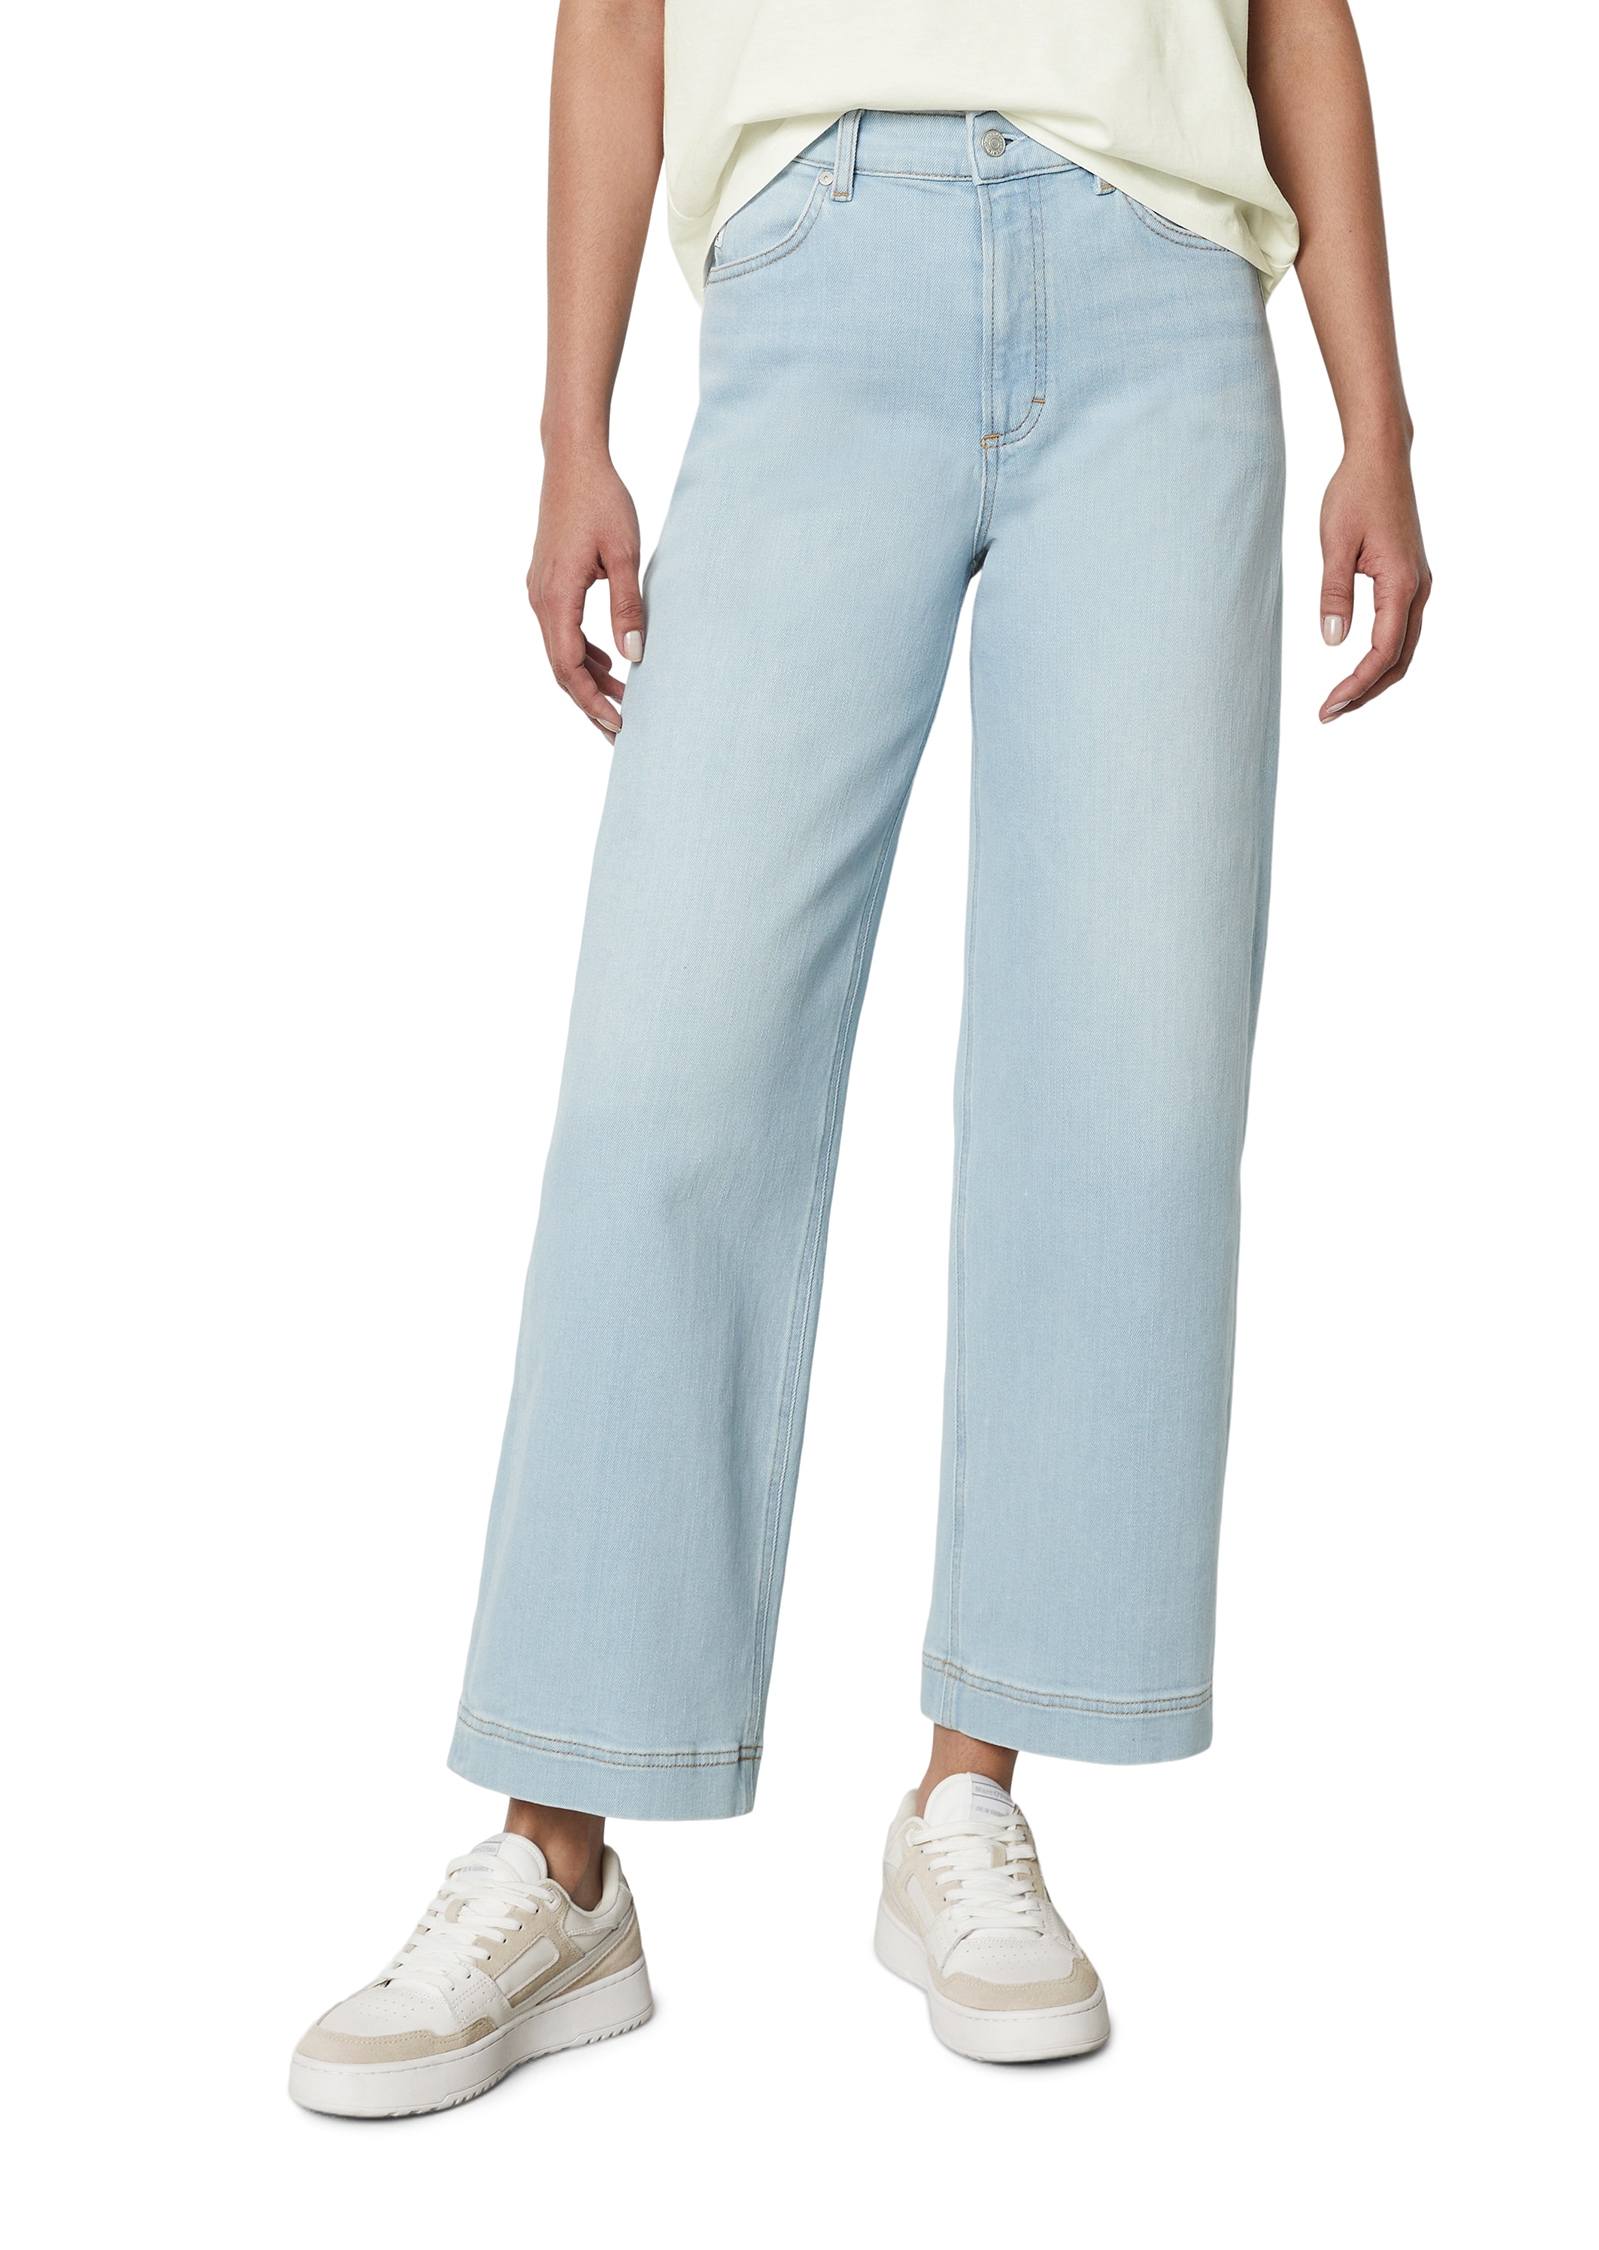 Marc O'Polo DENIM Ankle-Jeans »Modell TOMMA cropped«, Super lässig und mega bequem